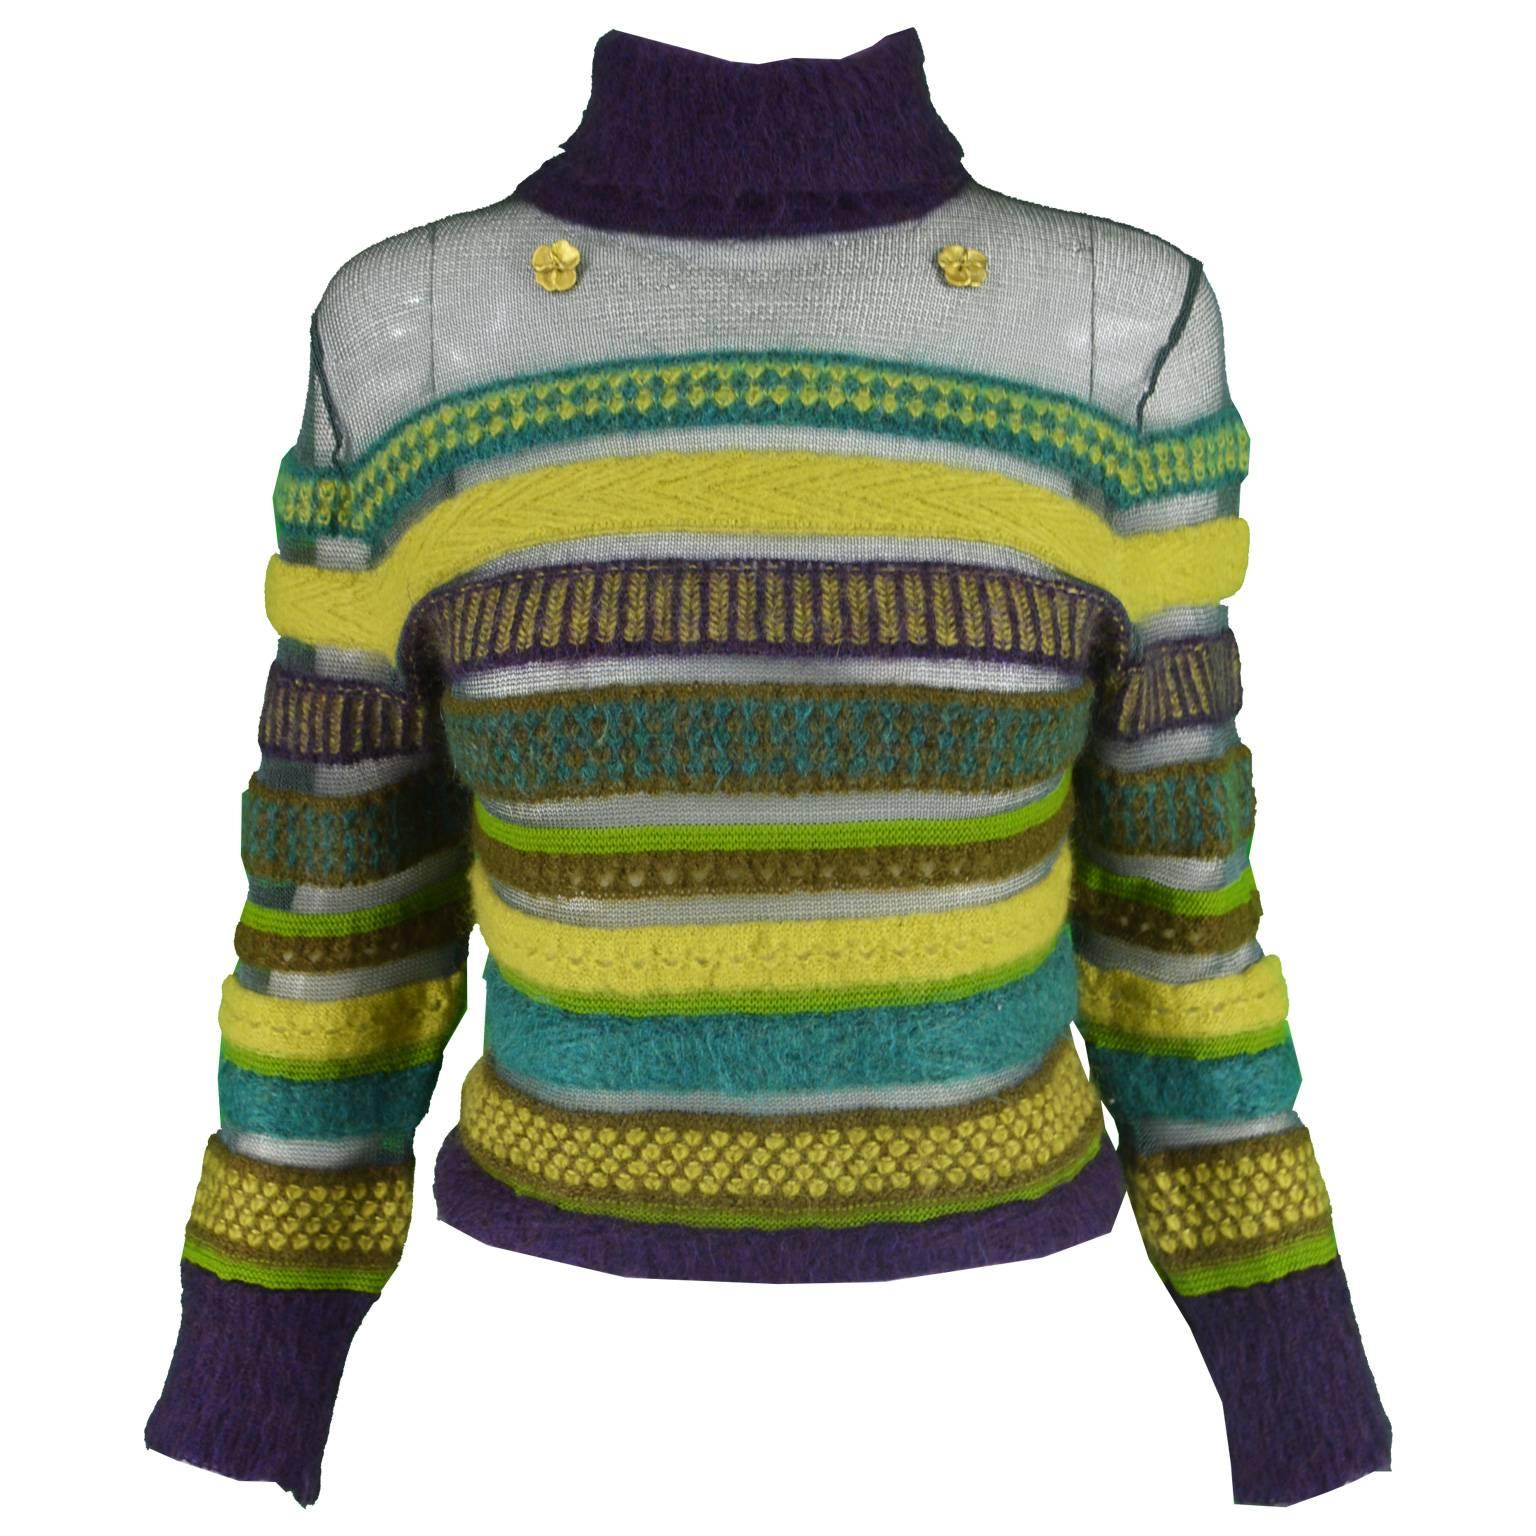 Kenzo Vintage 1990s Striped Semi Sheer Fuzzy Green & Purple Turtleneck Sweater